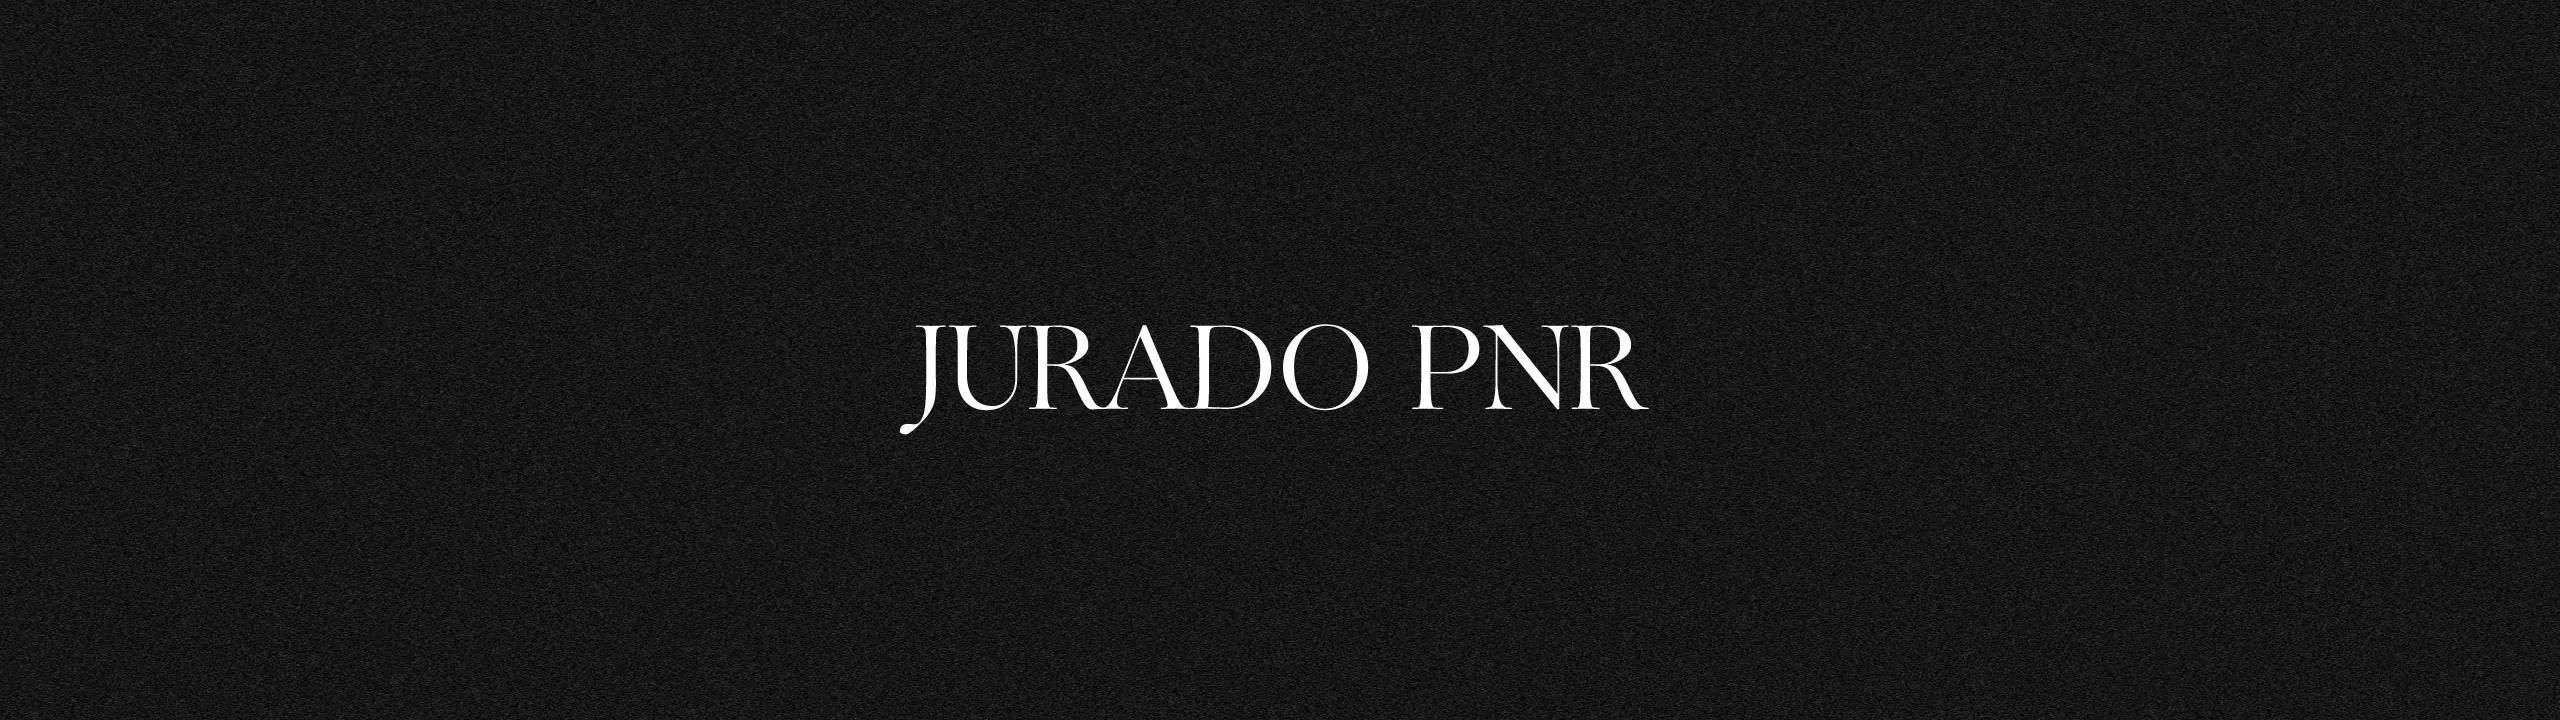 JURADO PNR FICC50